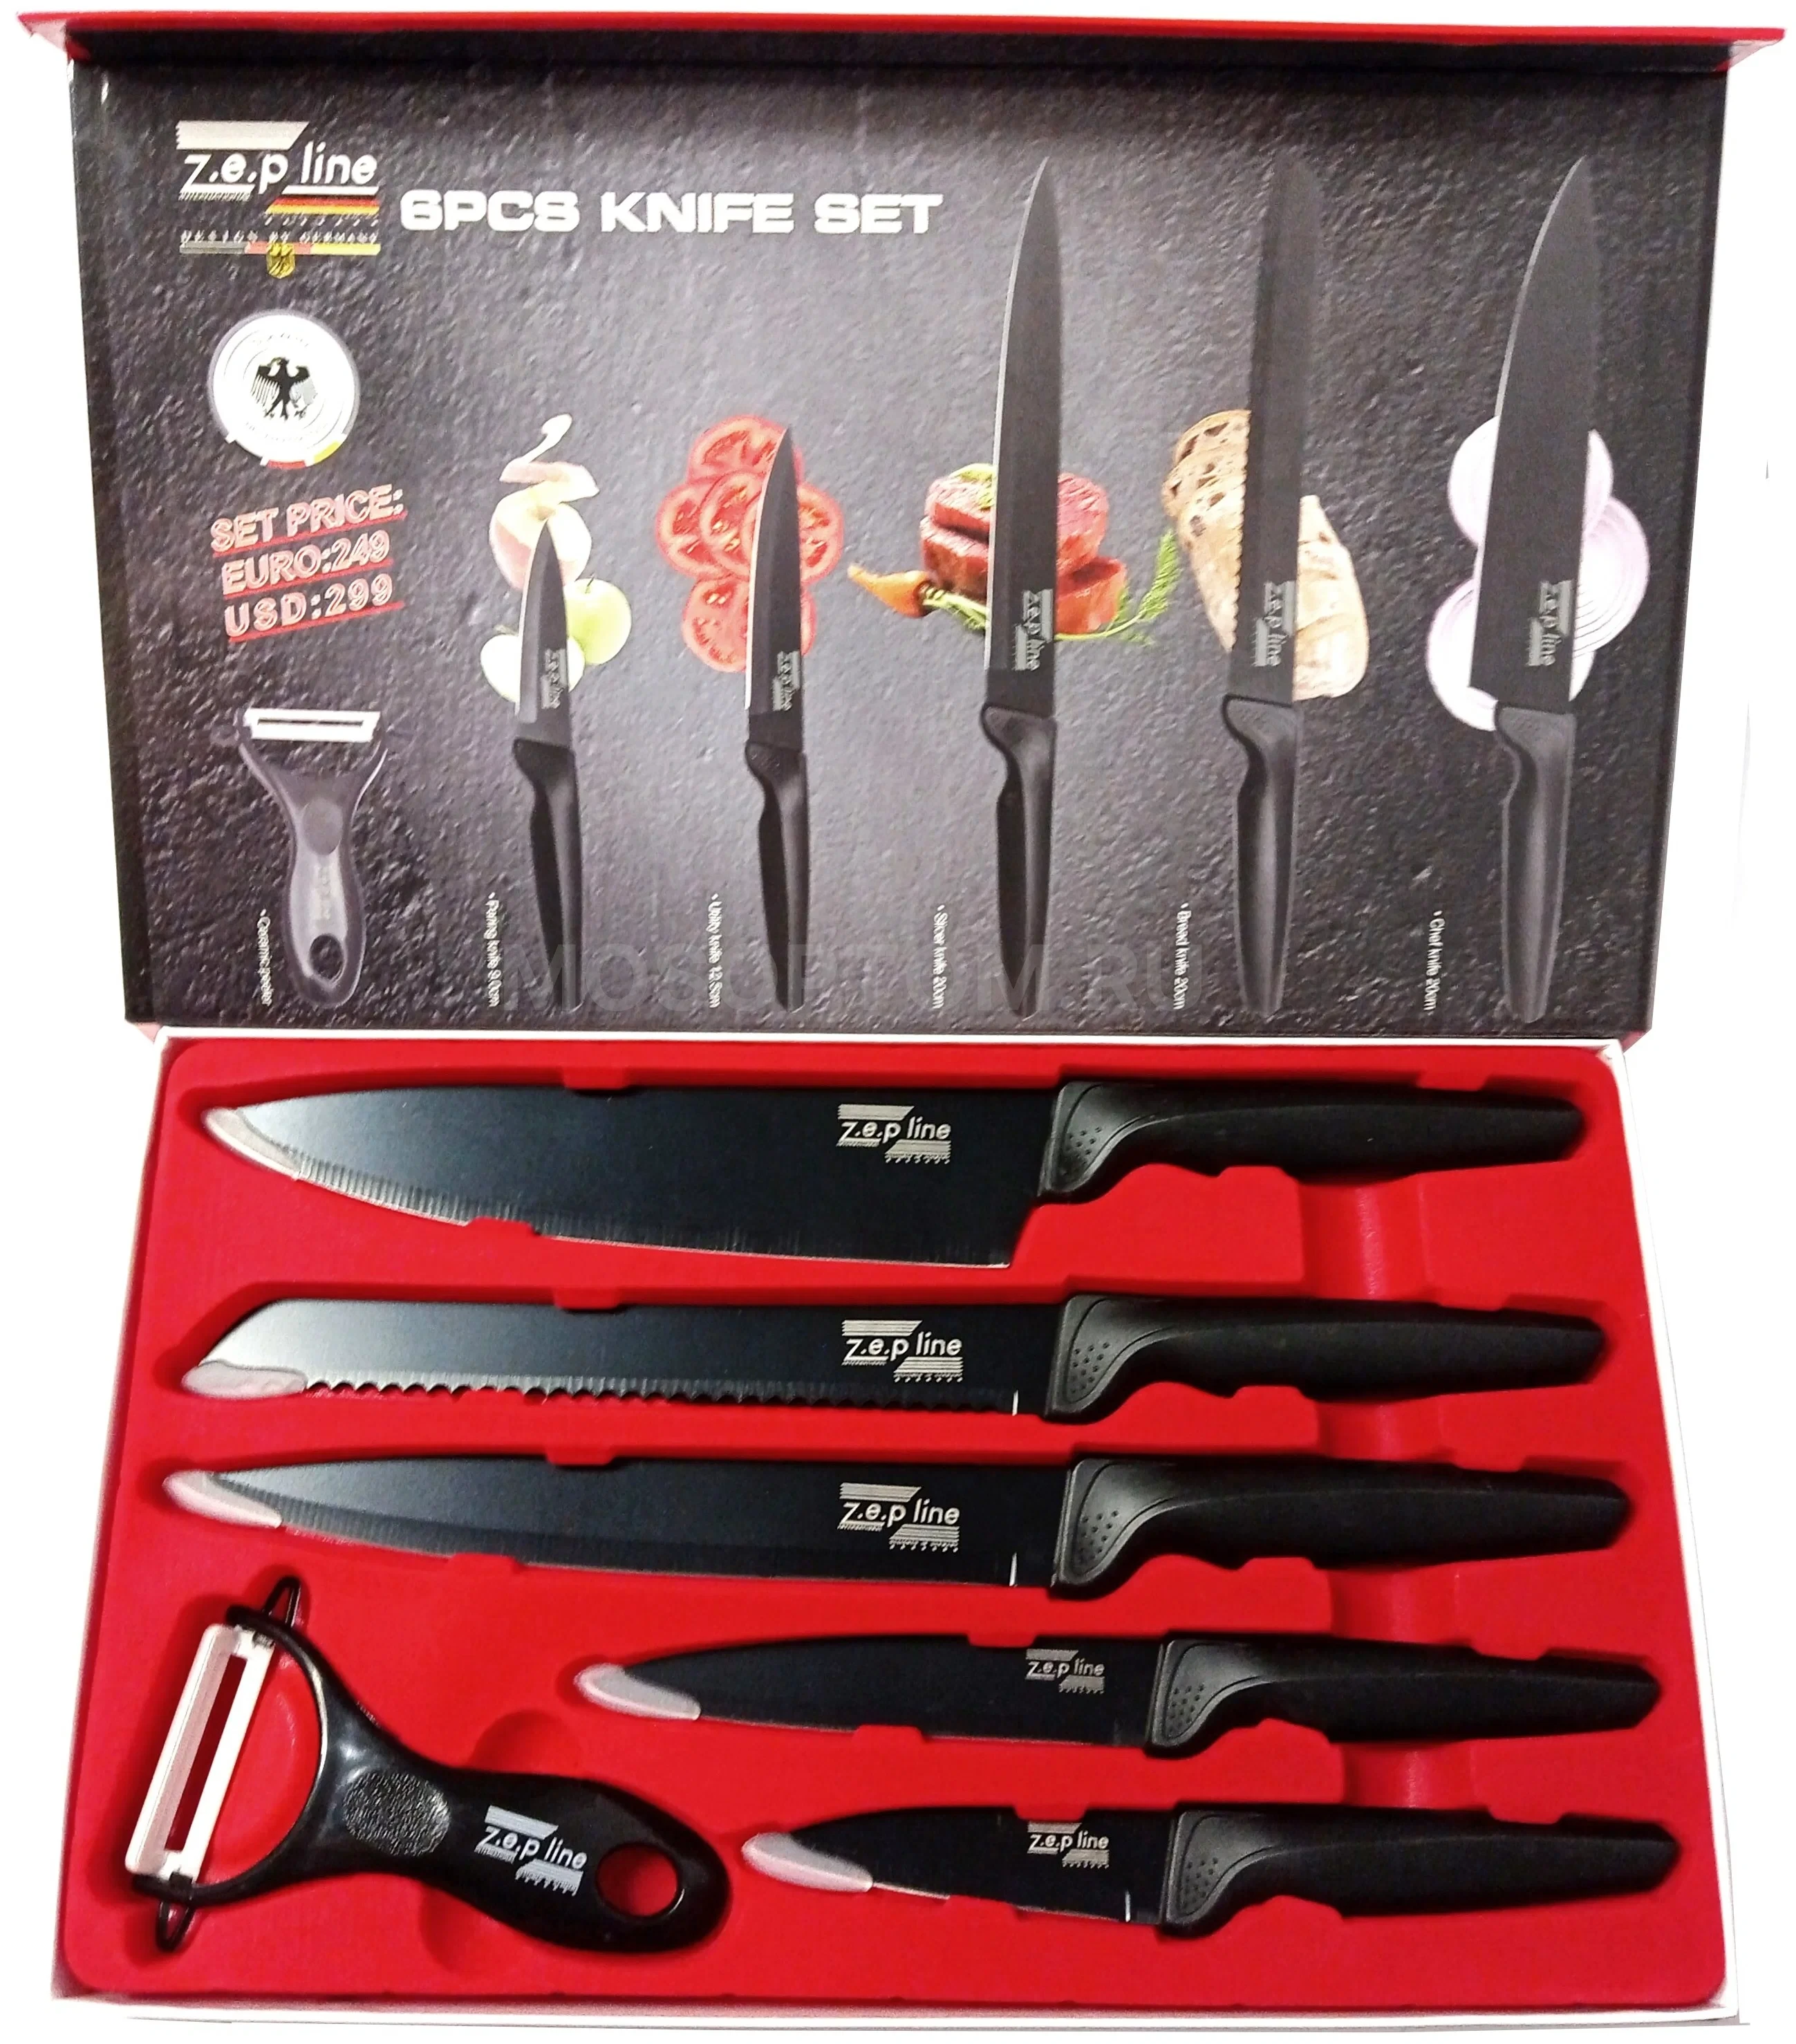 Набор кухонных ножей в подарочной коробке, 6 предметов Zep Line ZP-6685 оптом